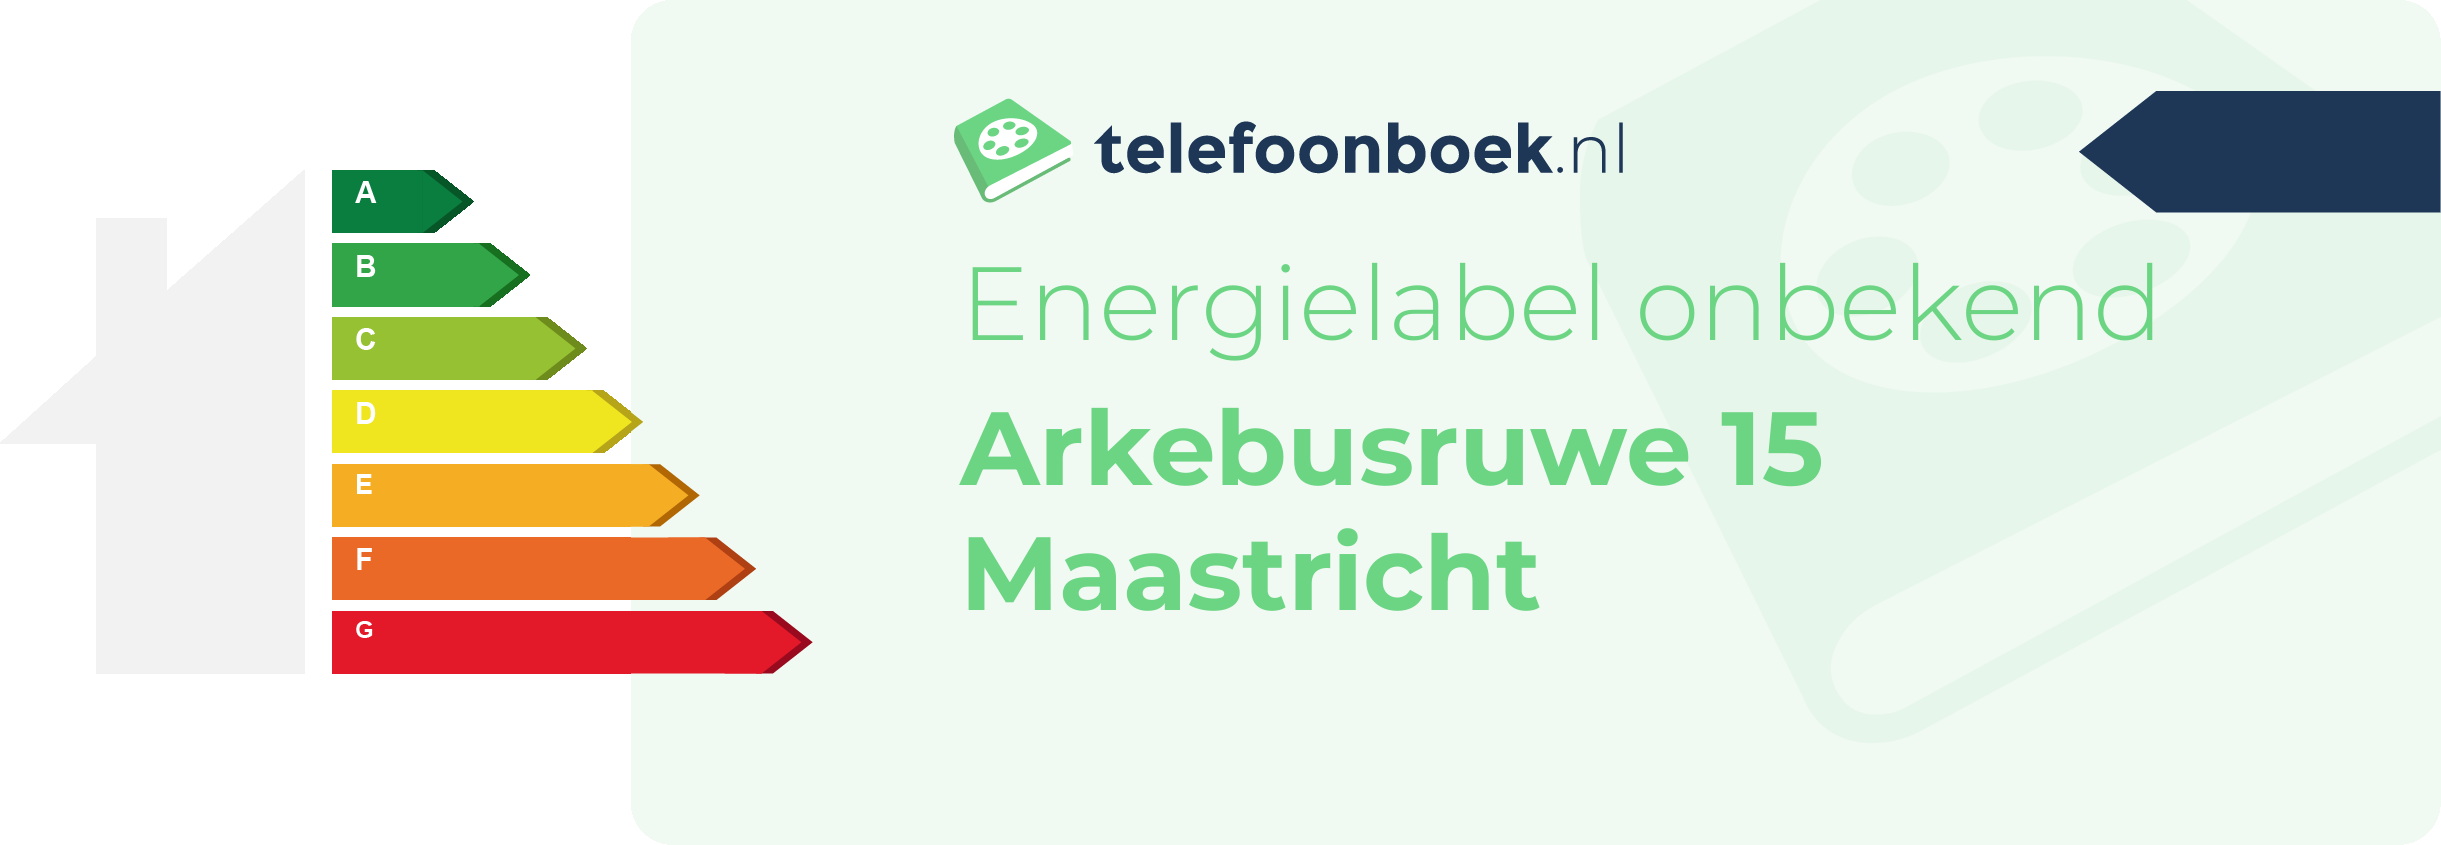 Energielabel Arkebusruwe 15 Maastricht